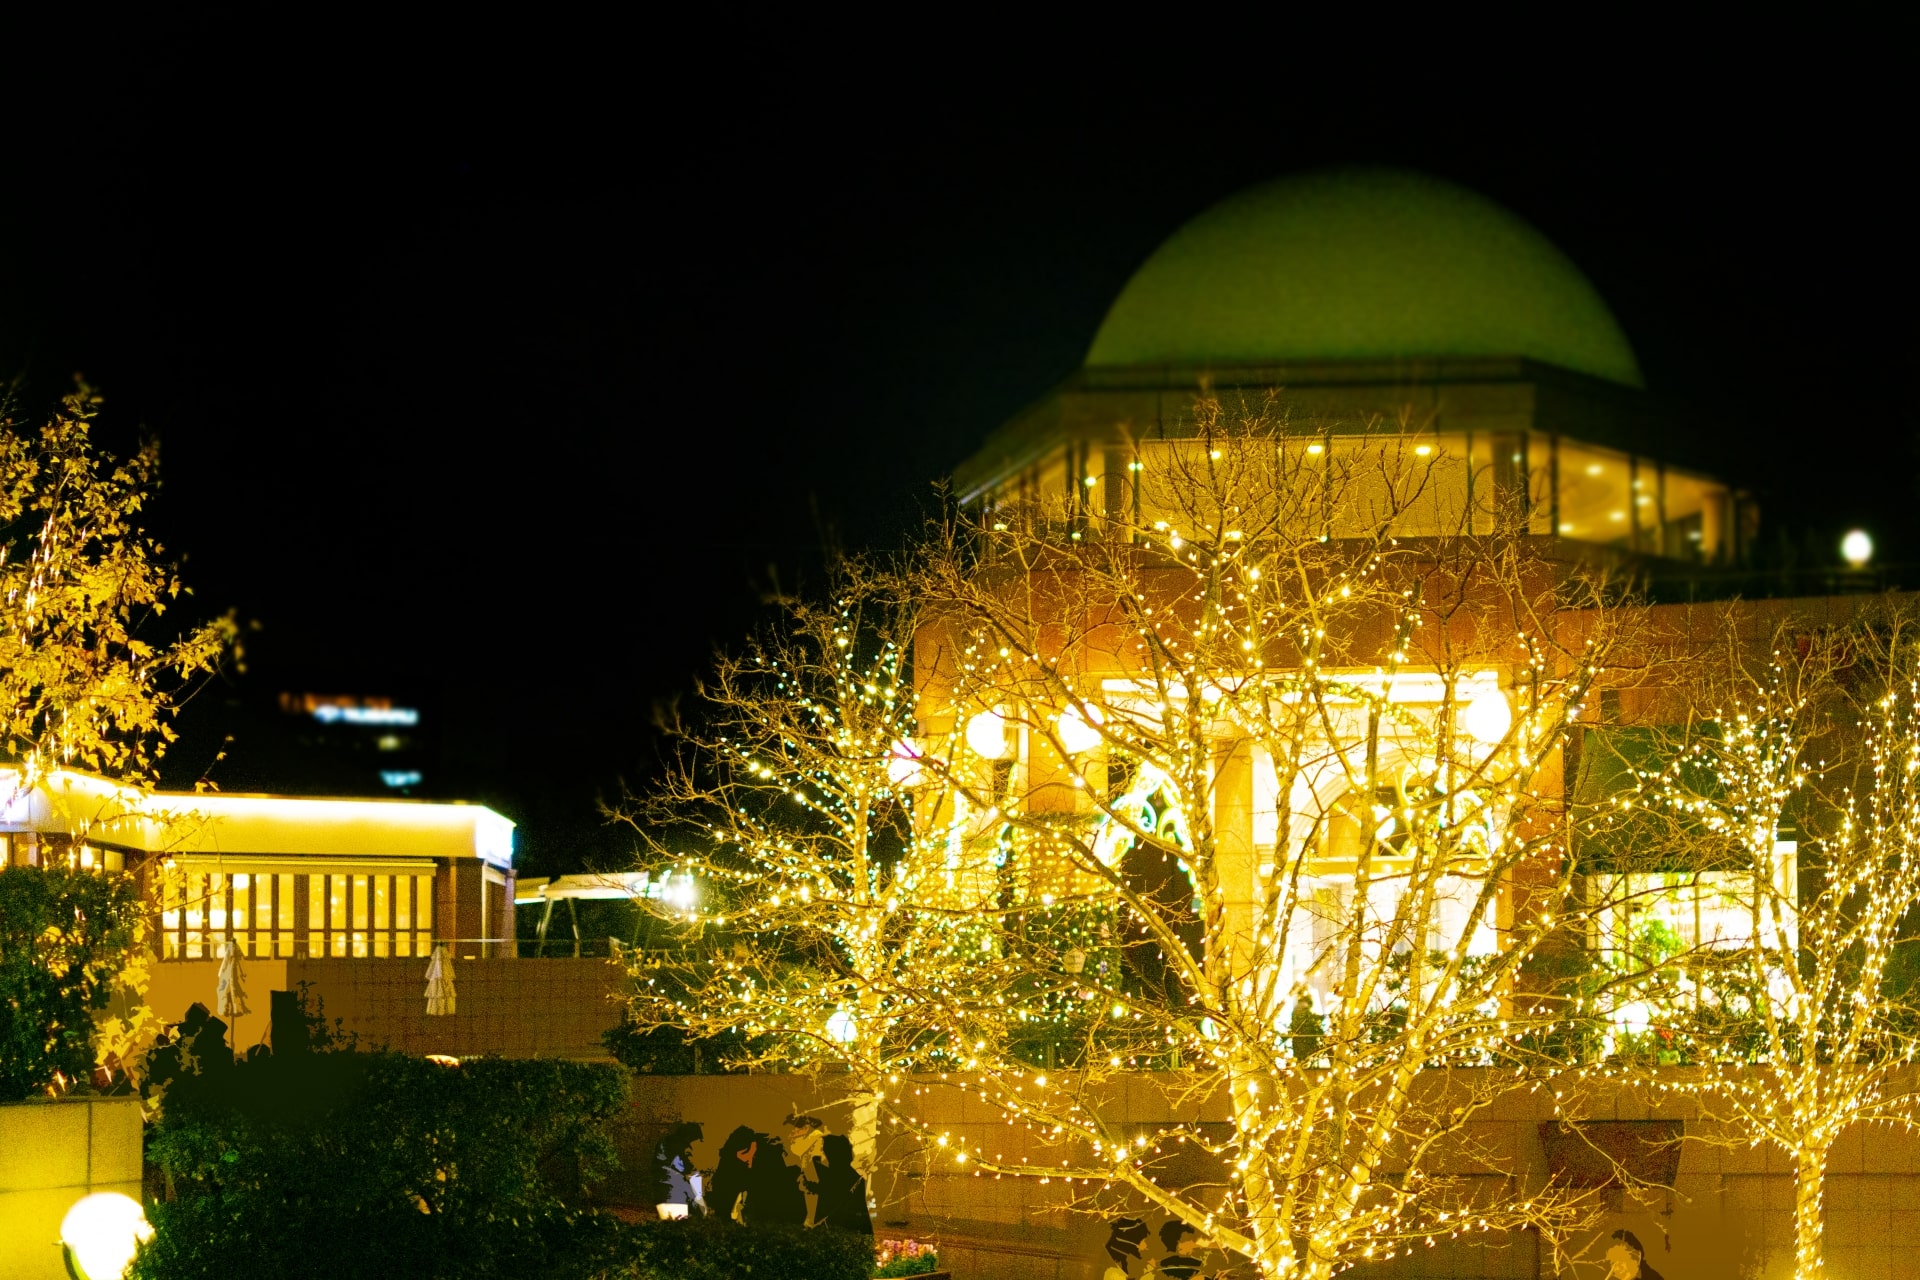 Ebisu Garden Place at night